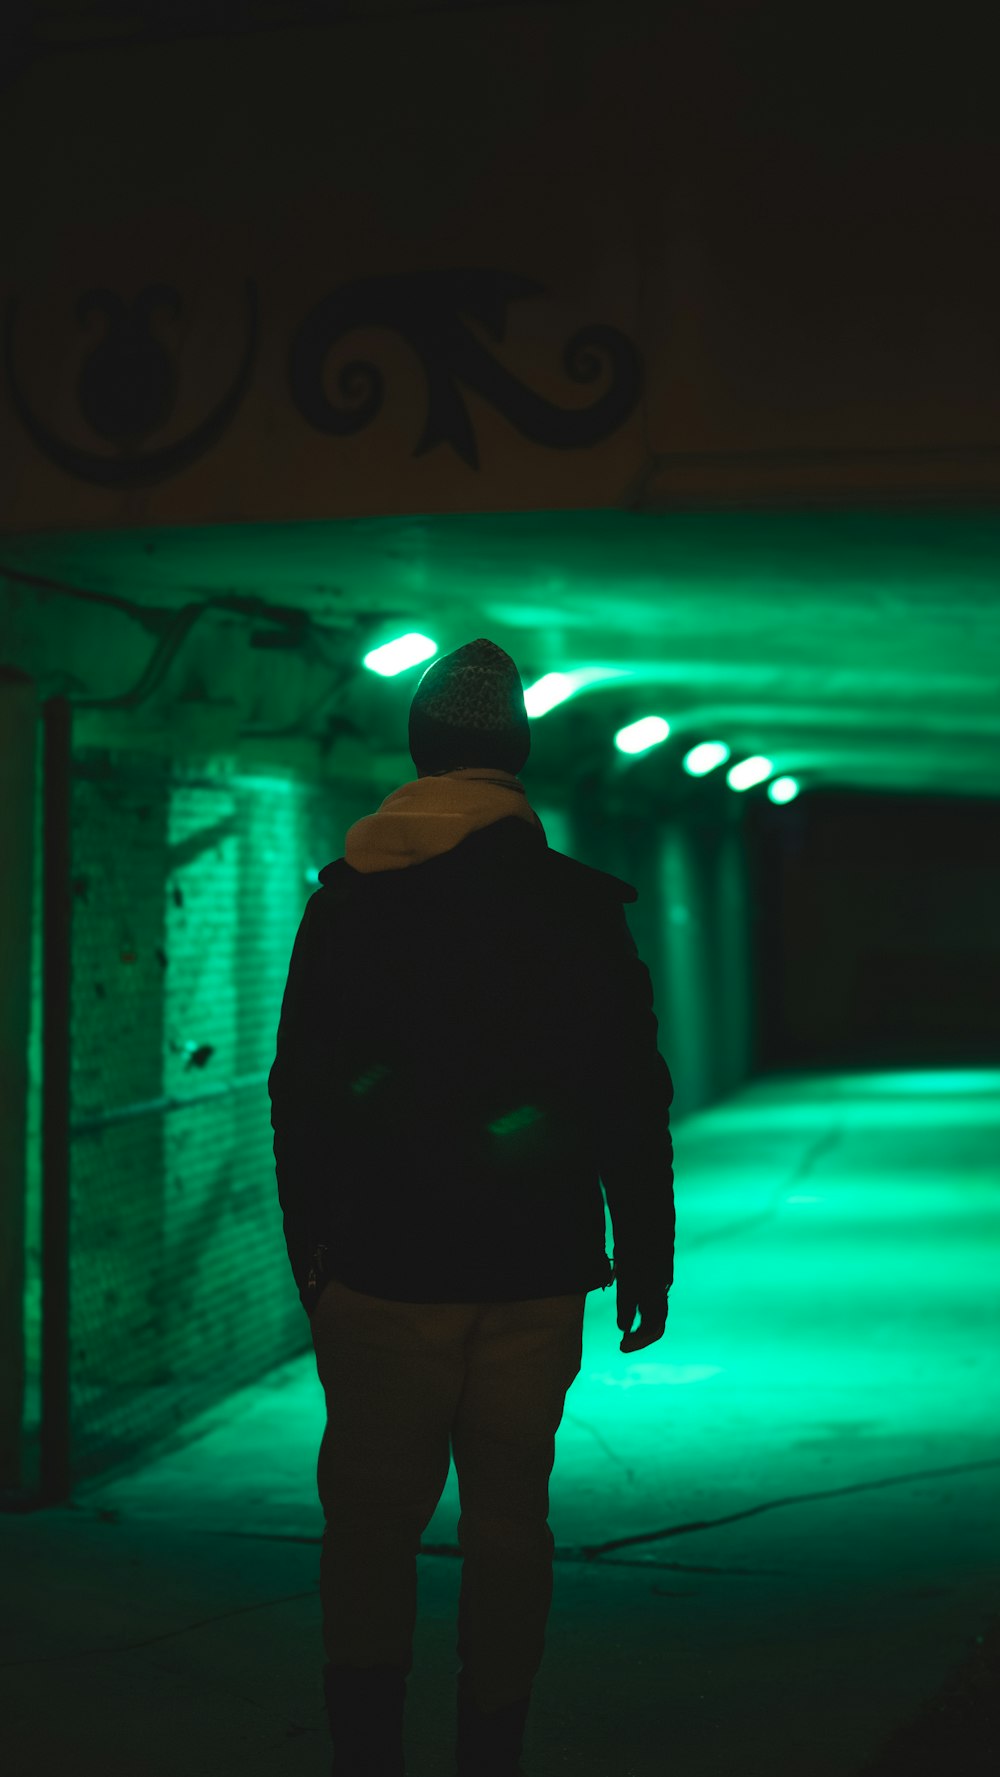 a man walking down a dark street at night